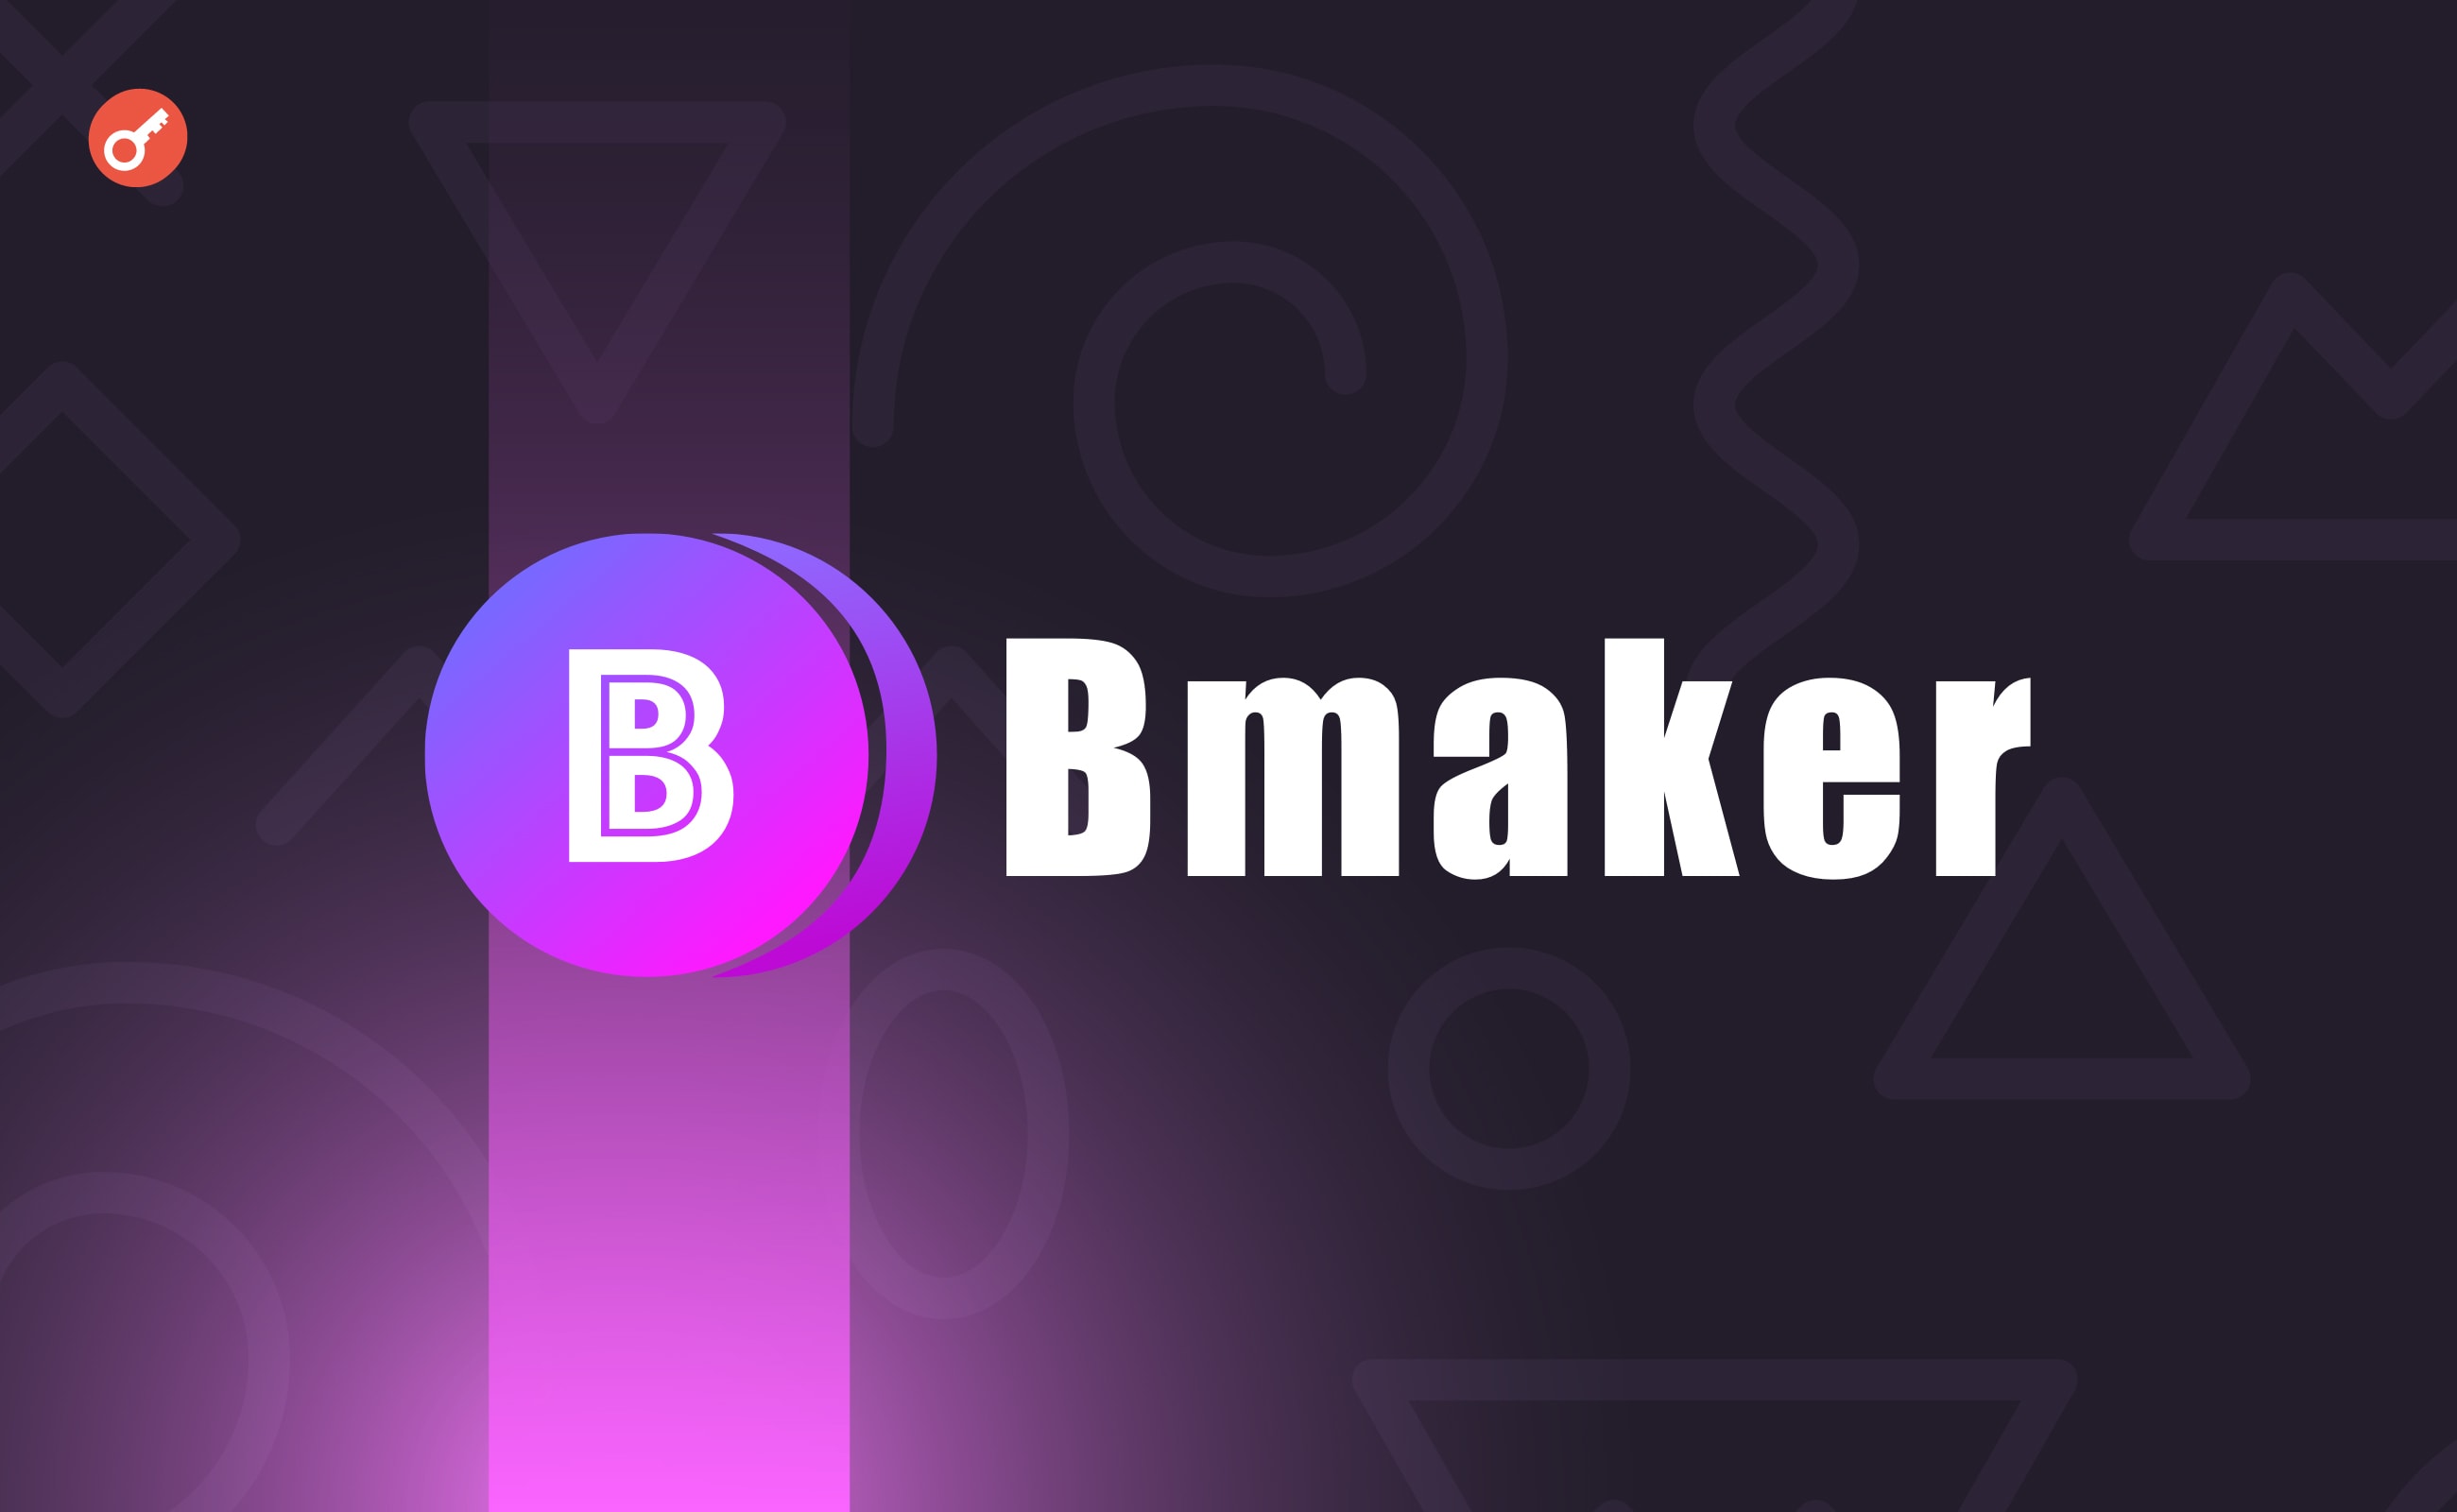 L2-протокол Bmaker привлек $1,2 млн инвестиций. Заглавный коллаж новости.